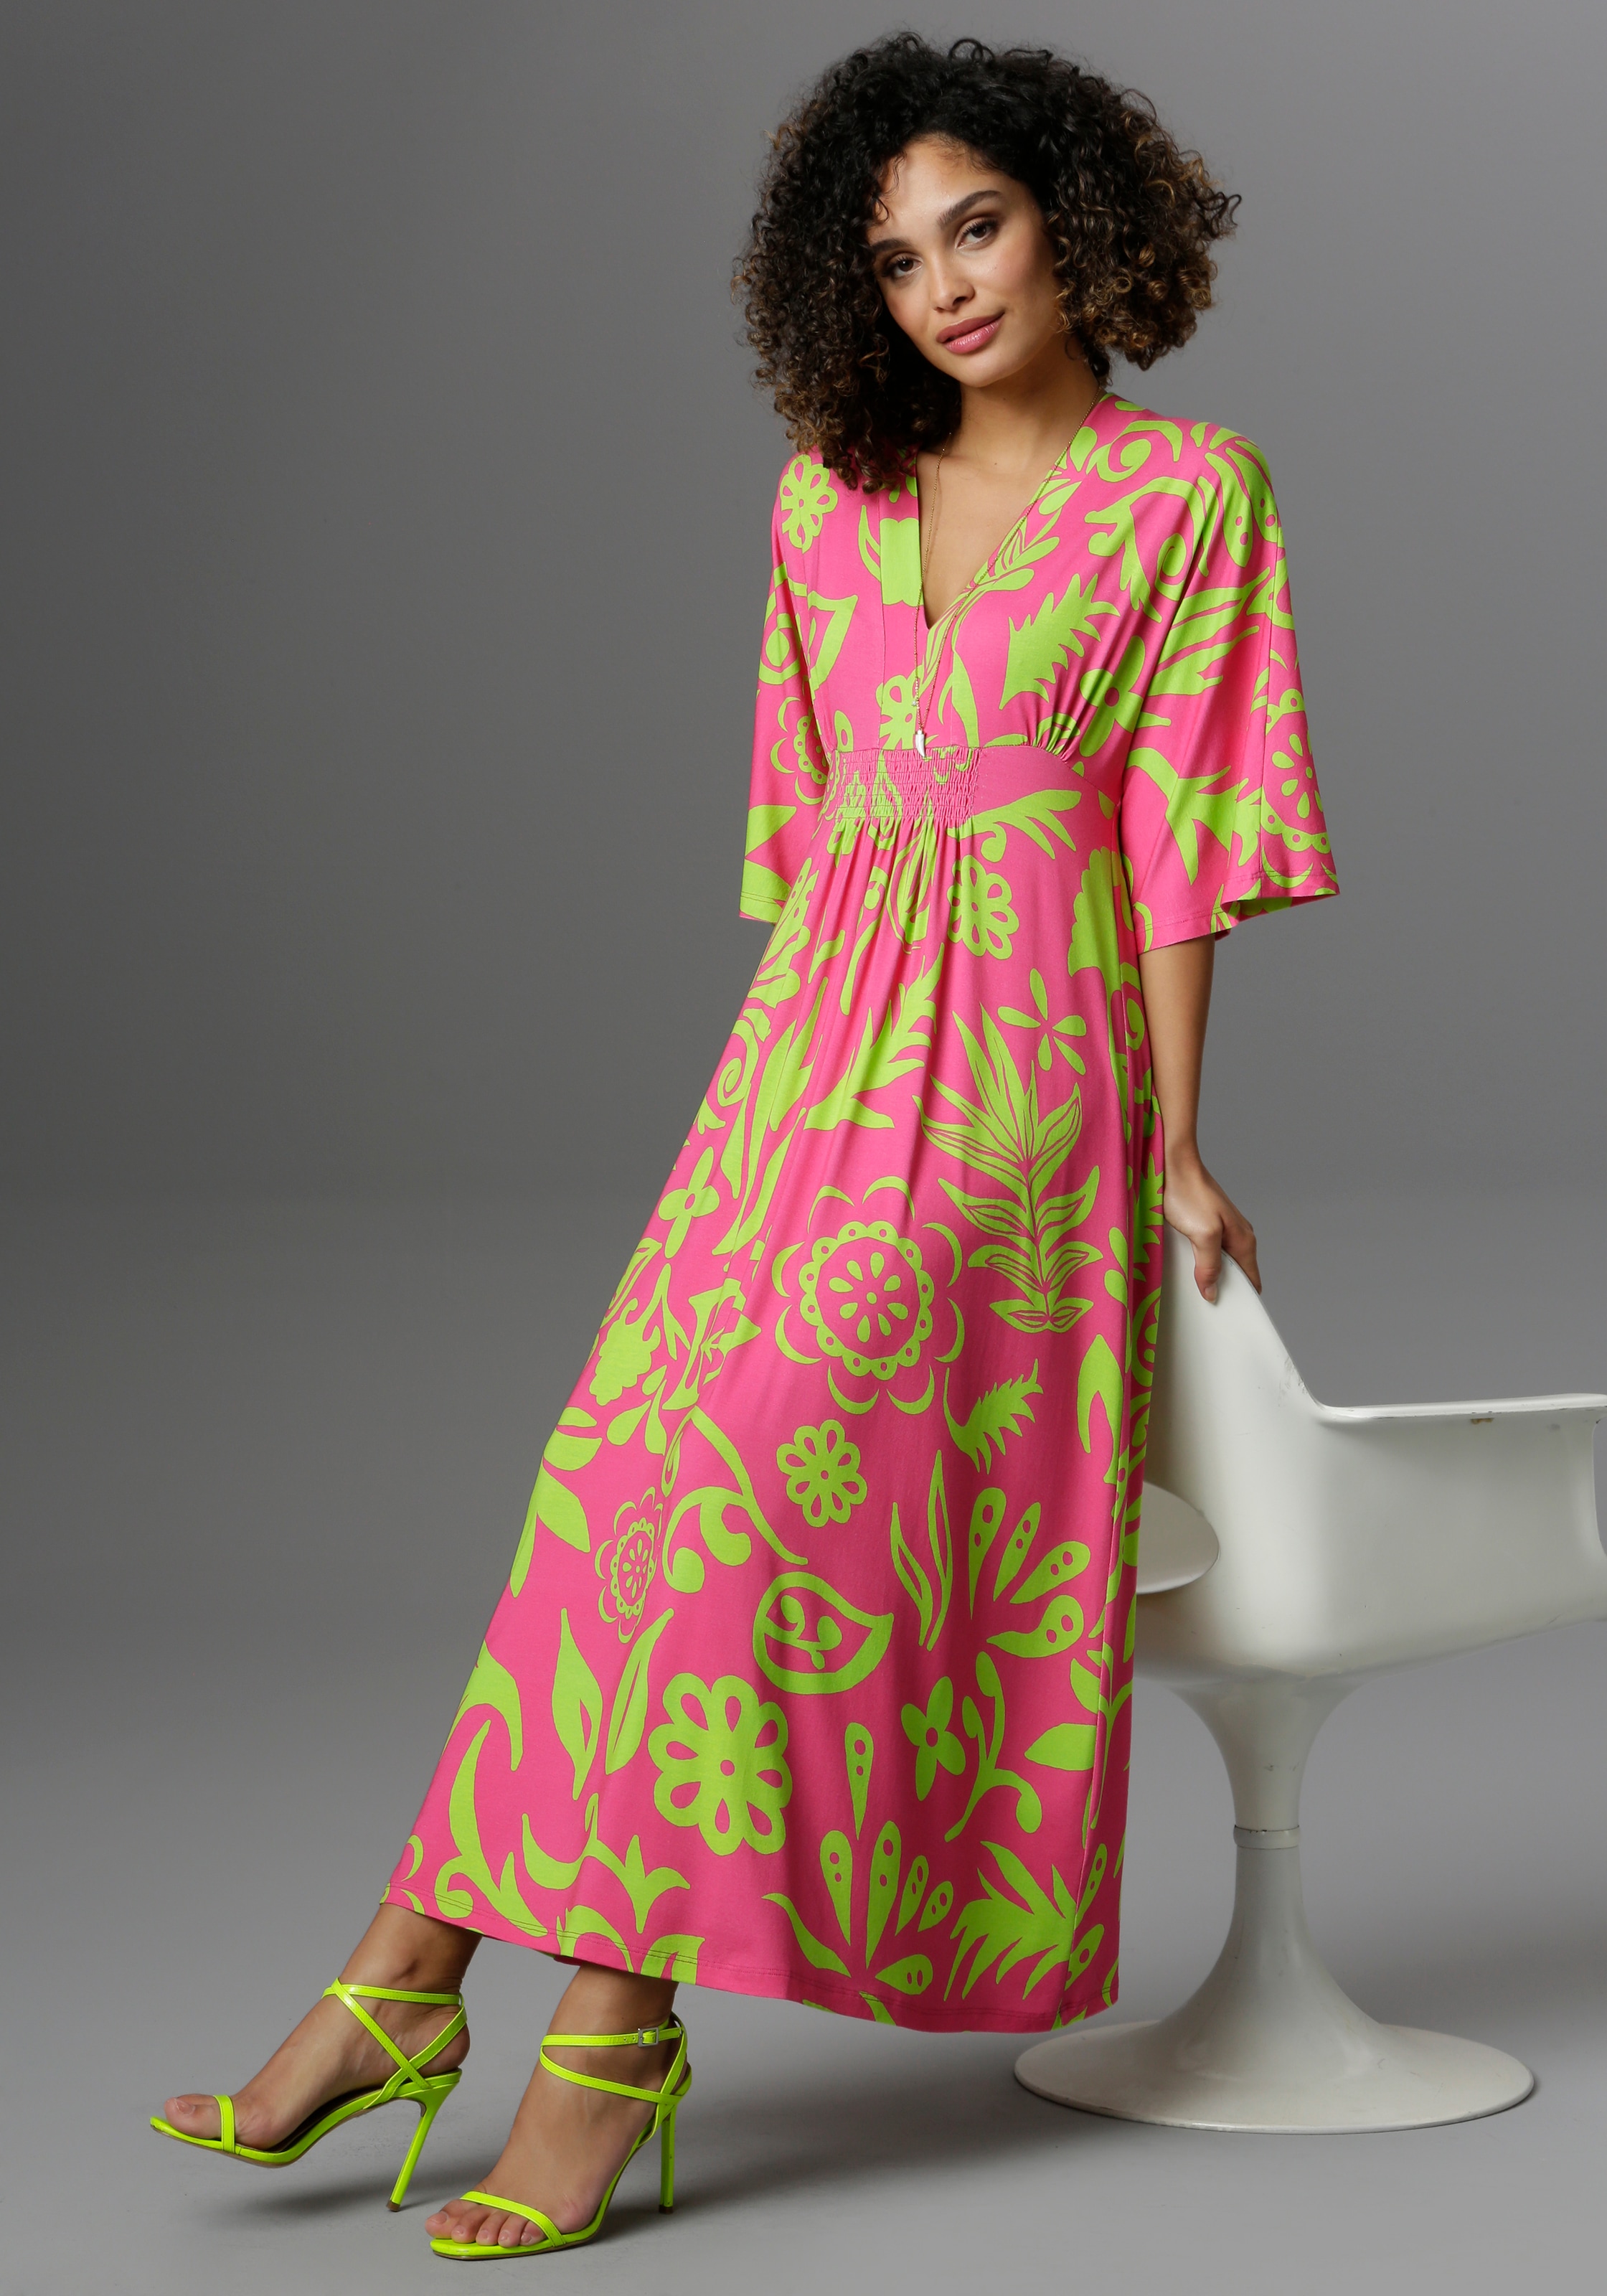 online jetzt kaufen Kleid OTTO | bei Pinkfarbene Pinkes Kleider